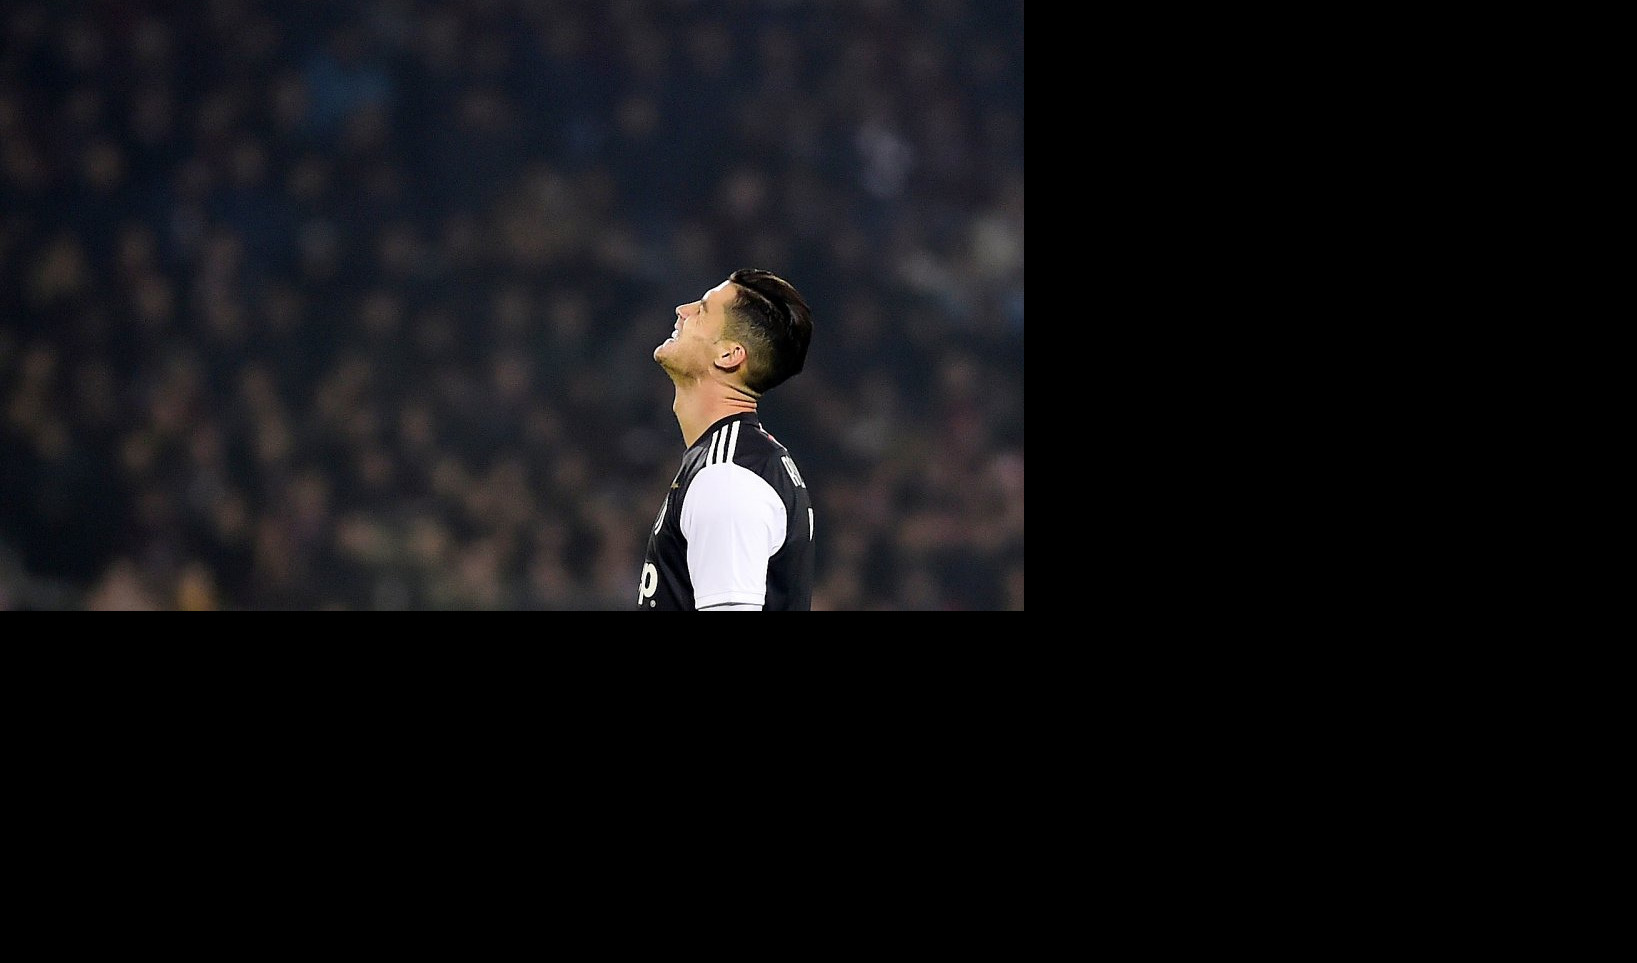 KRISTIJANO ĆE CRĆI OD MUKE! Mesi najbolji fudbaler sveta, Ronaldo tek četvrti!